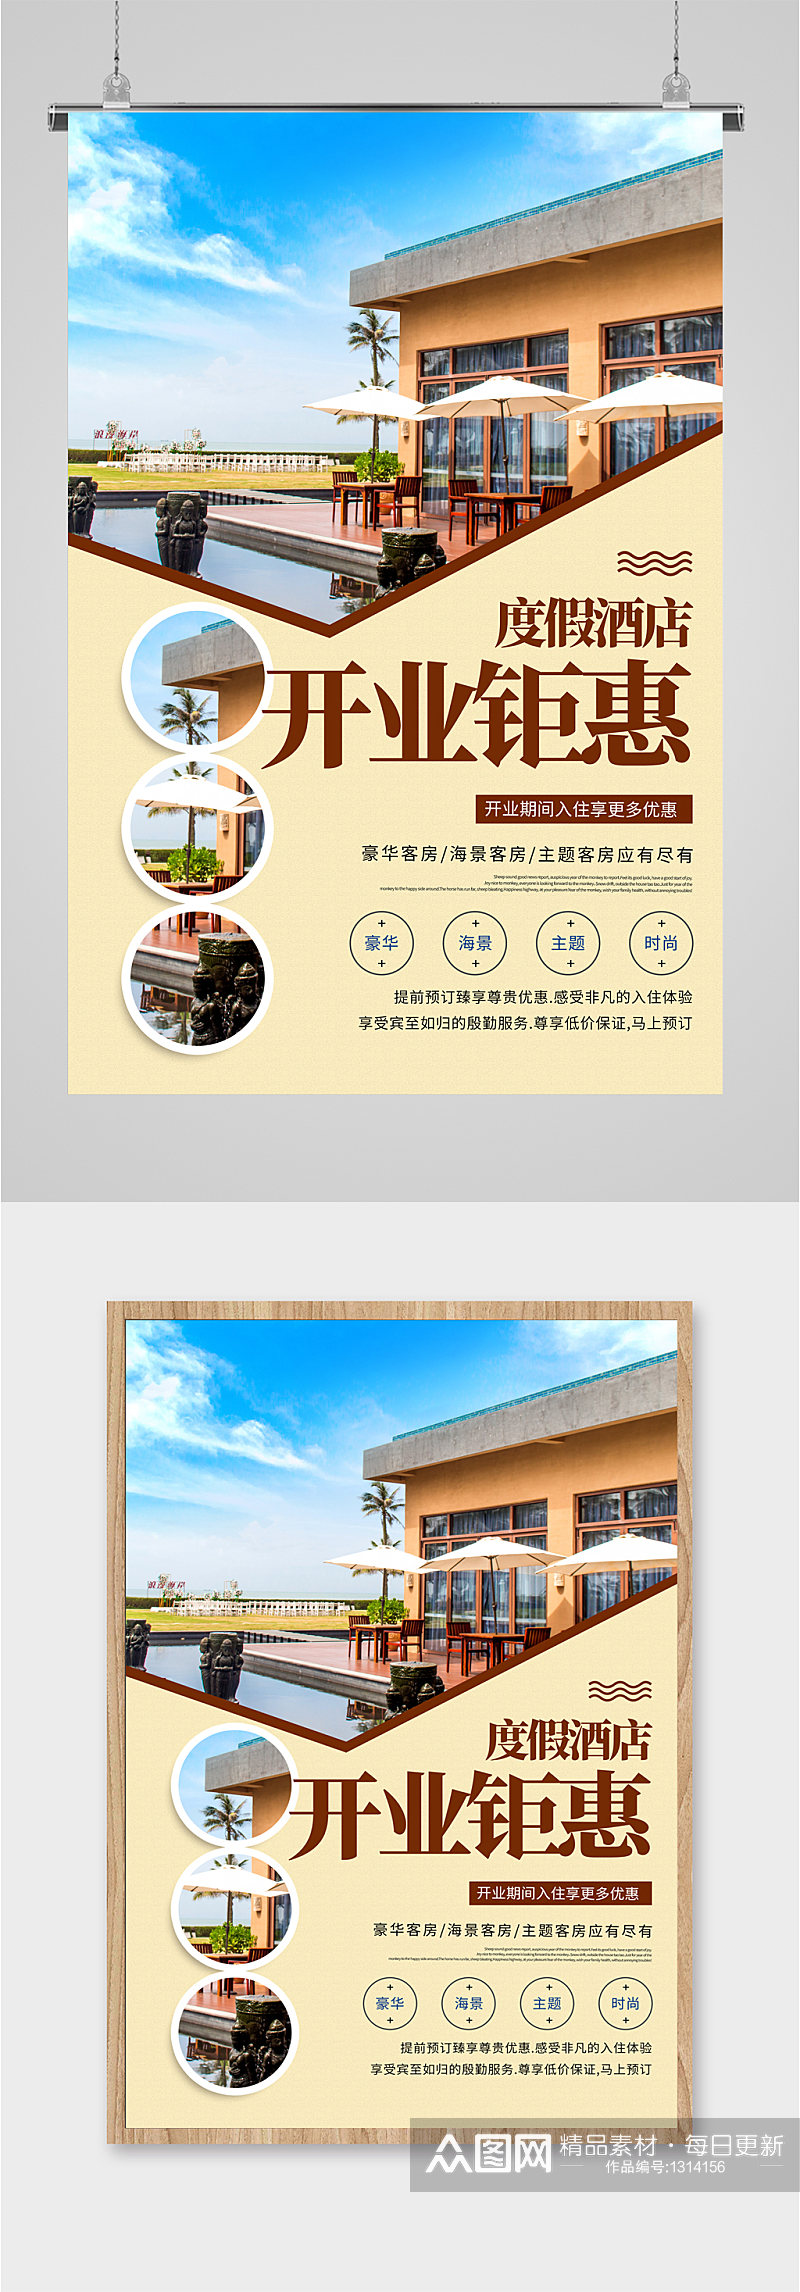 民宿度假酒店开业钜惠宣传海报素材